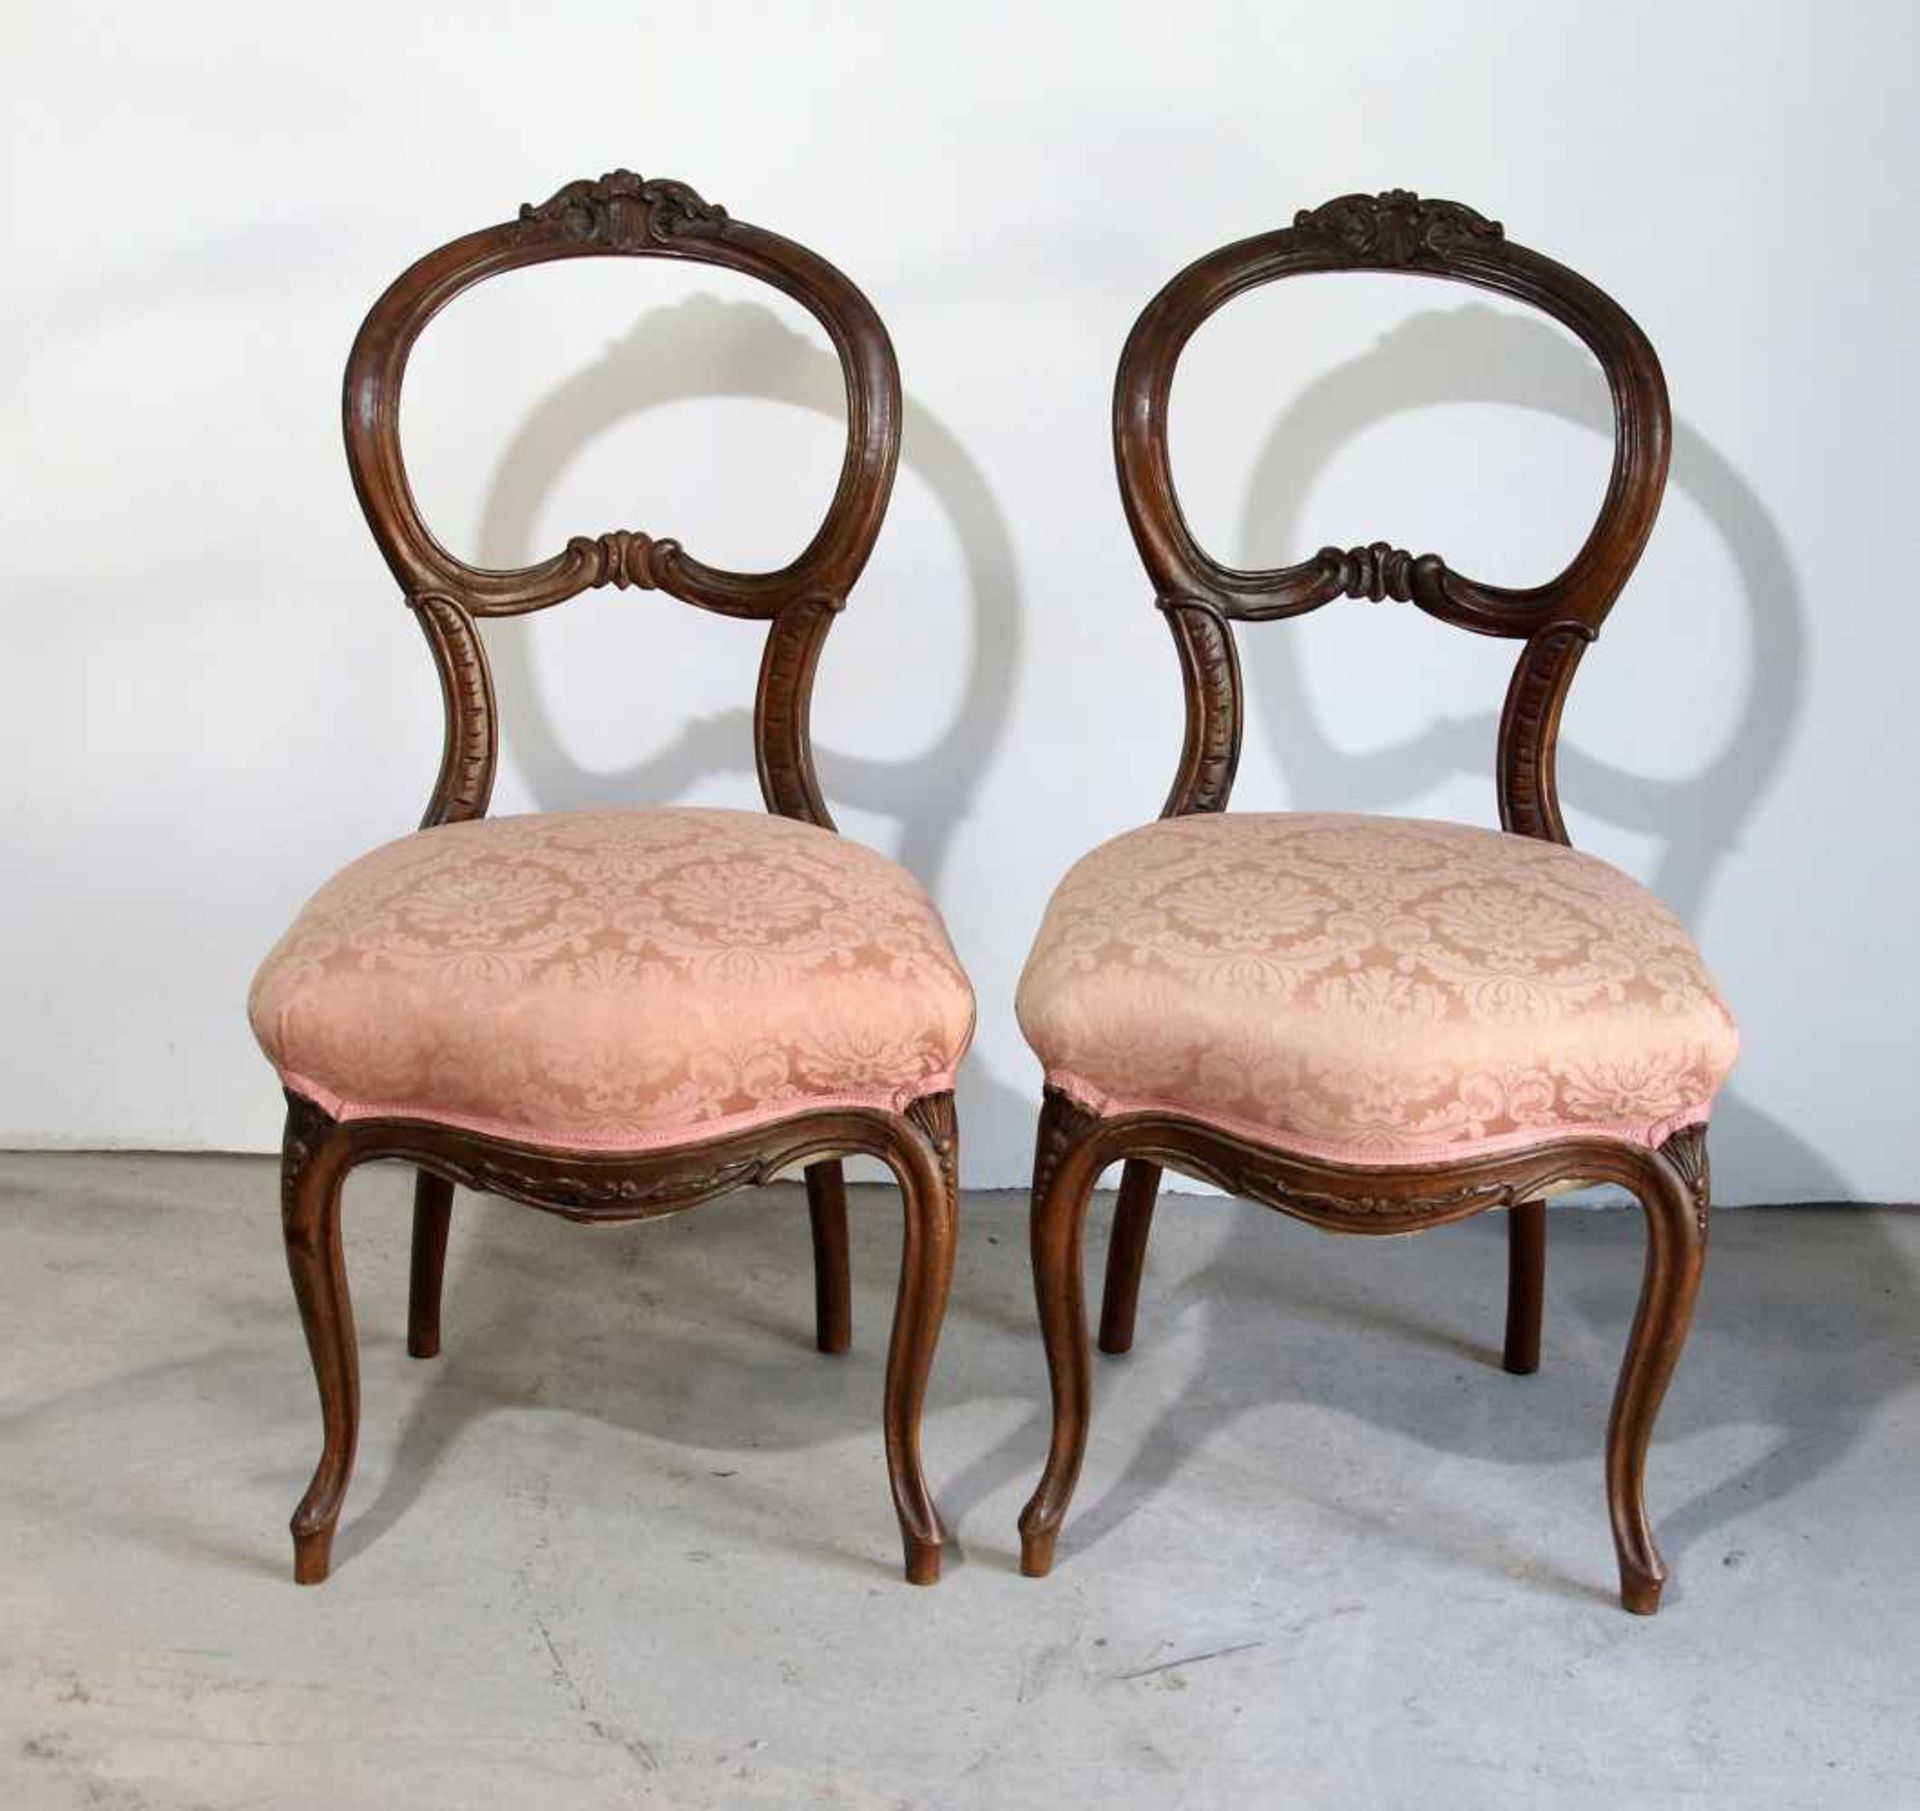 Paar Stühle Spätbiedermeierum 1840, Hartholz, beschnitzt, verziert, Sitzflächen gepolstert und